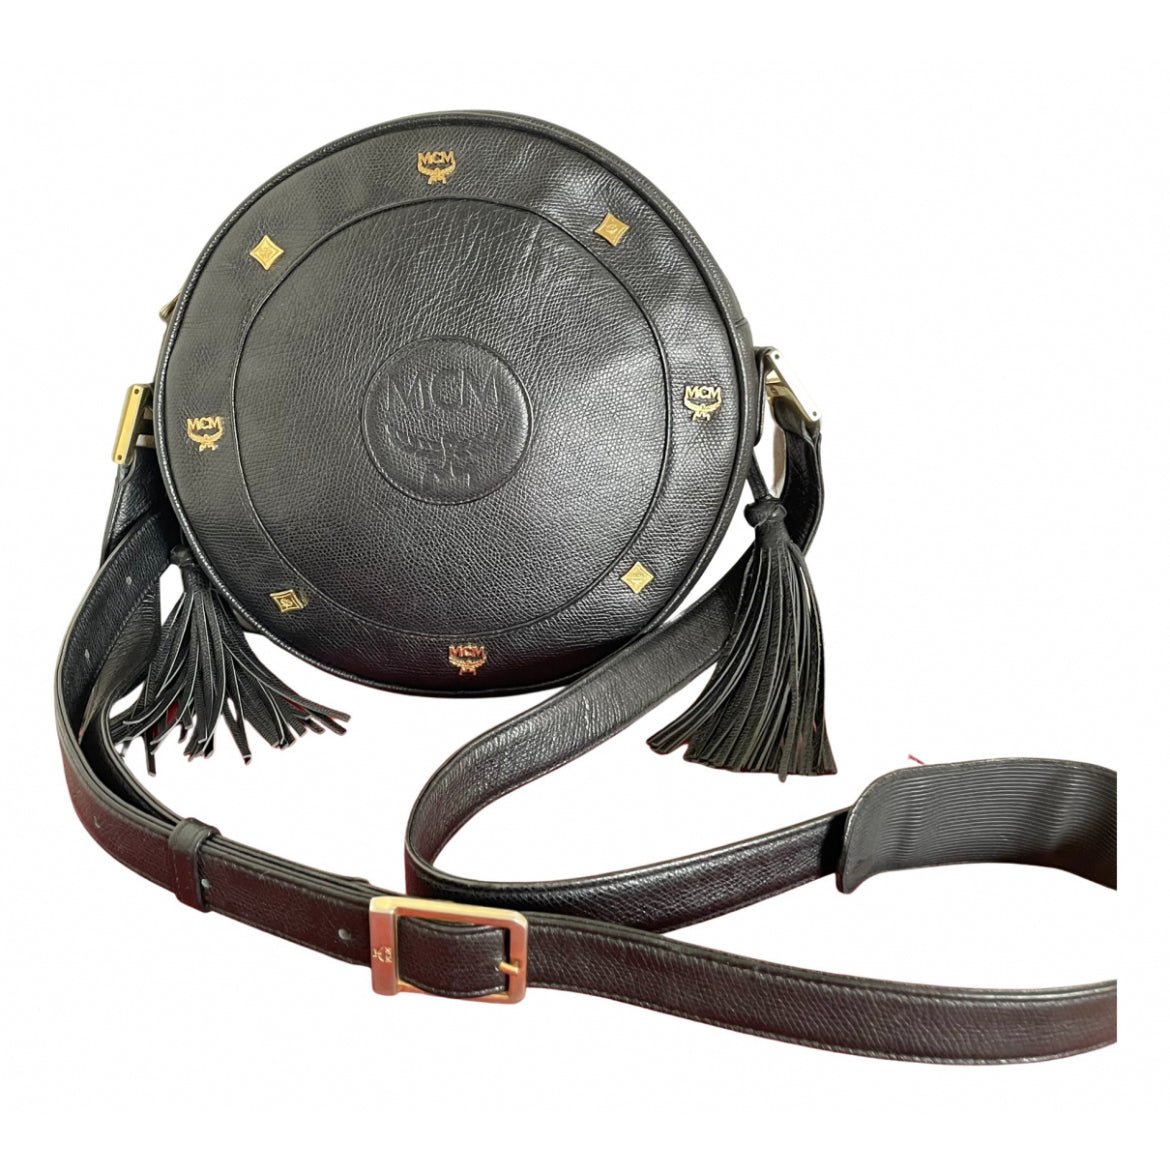 Vintage MCM black suzy wong, grained leather round shoulder bag